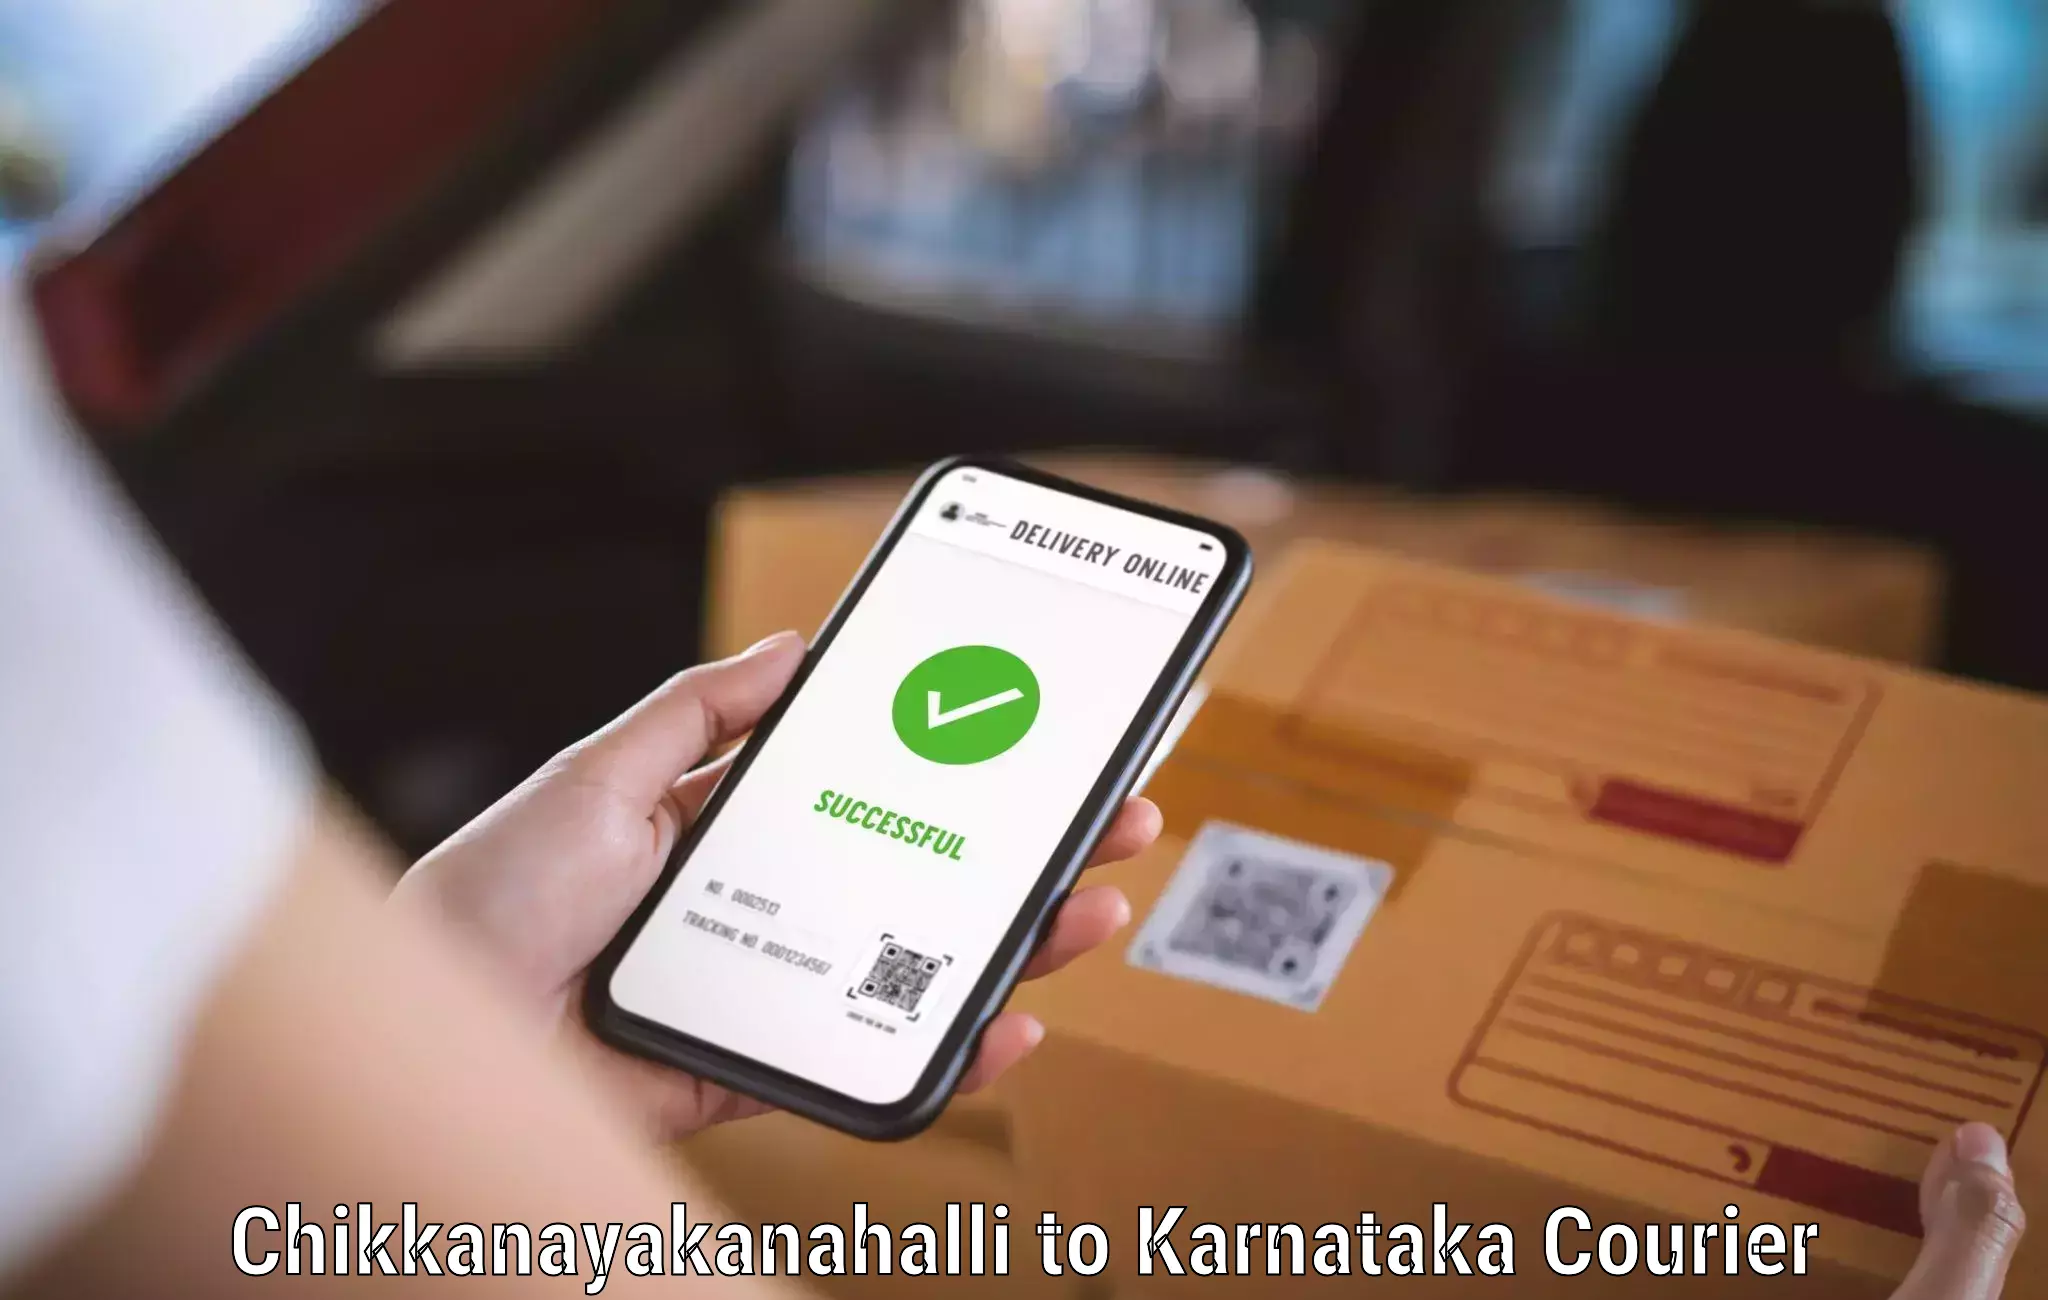 Courier service partnerships Chikkanayakanahalli to Yelburga